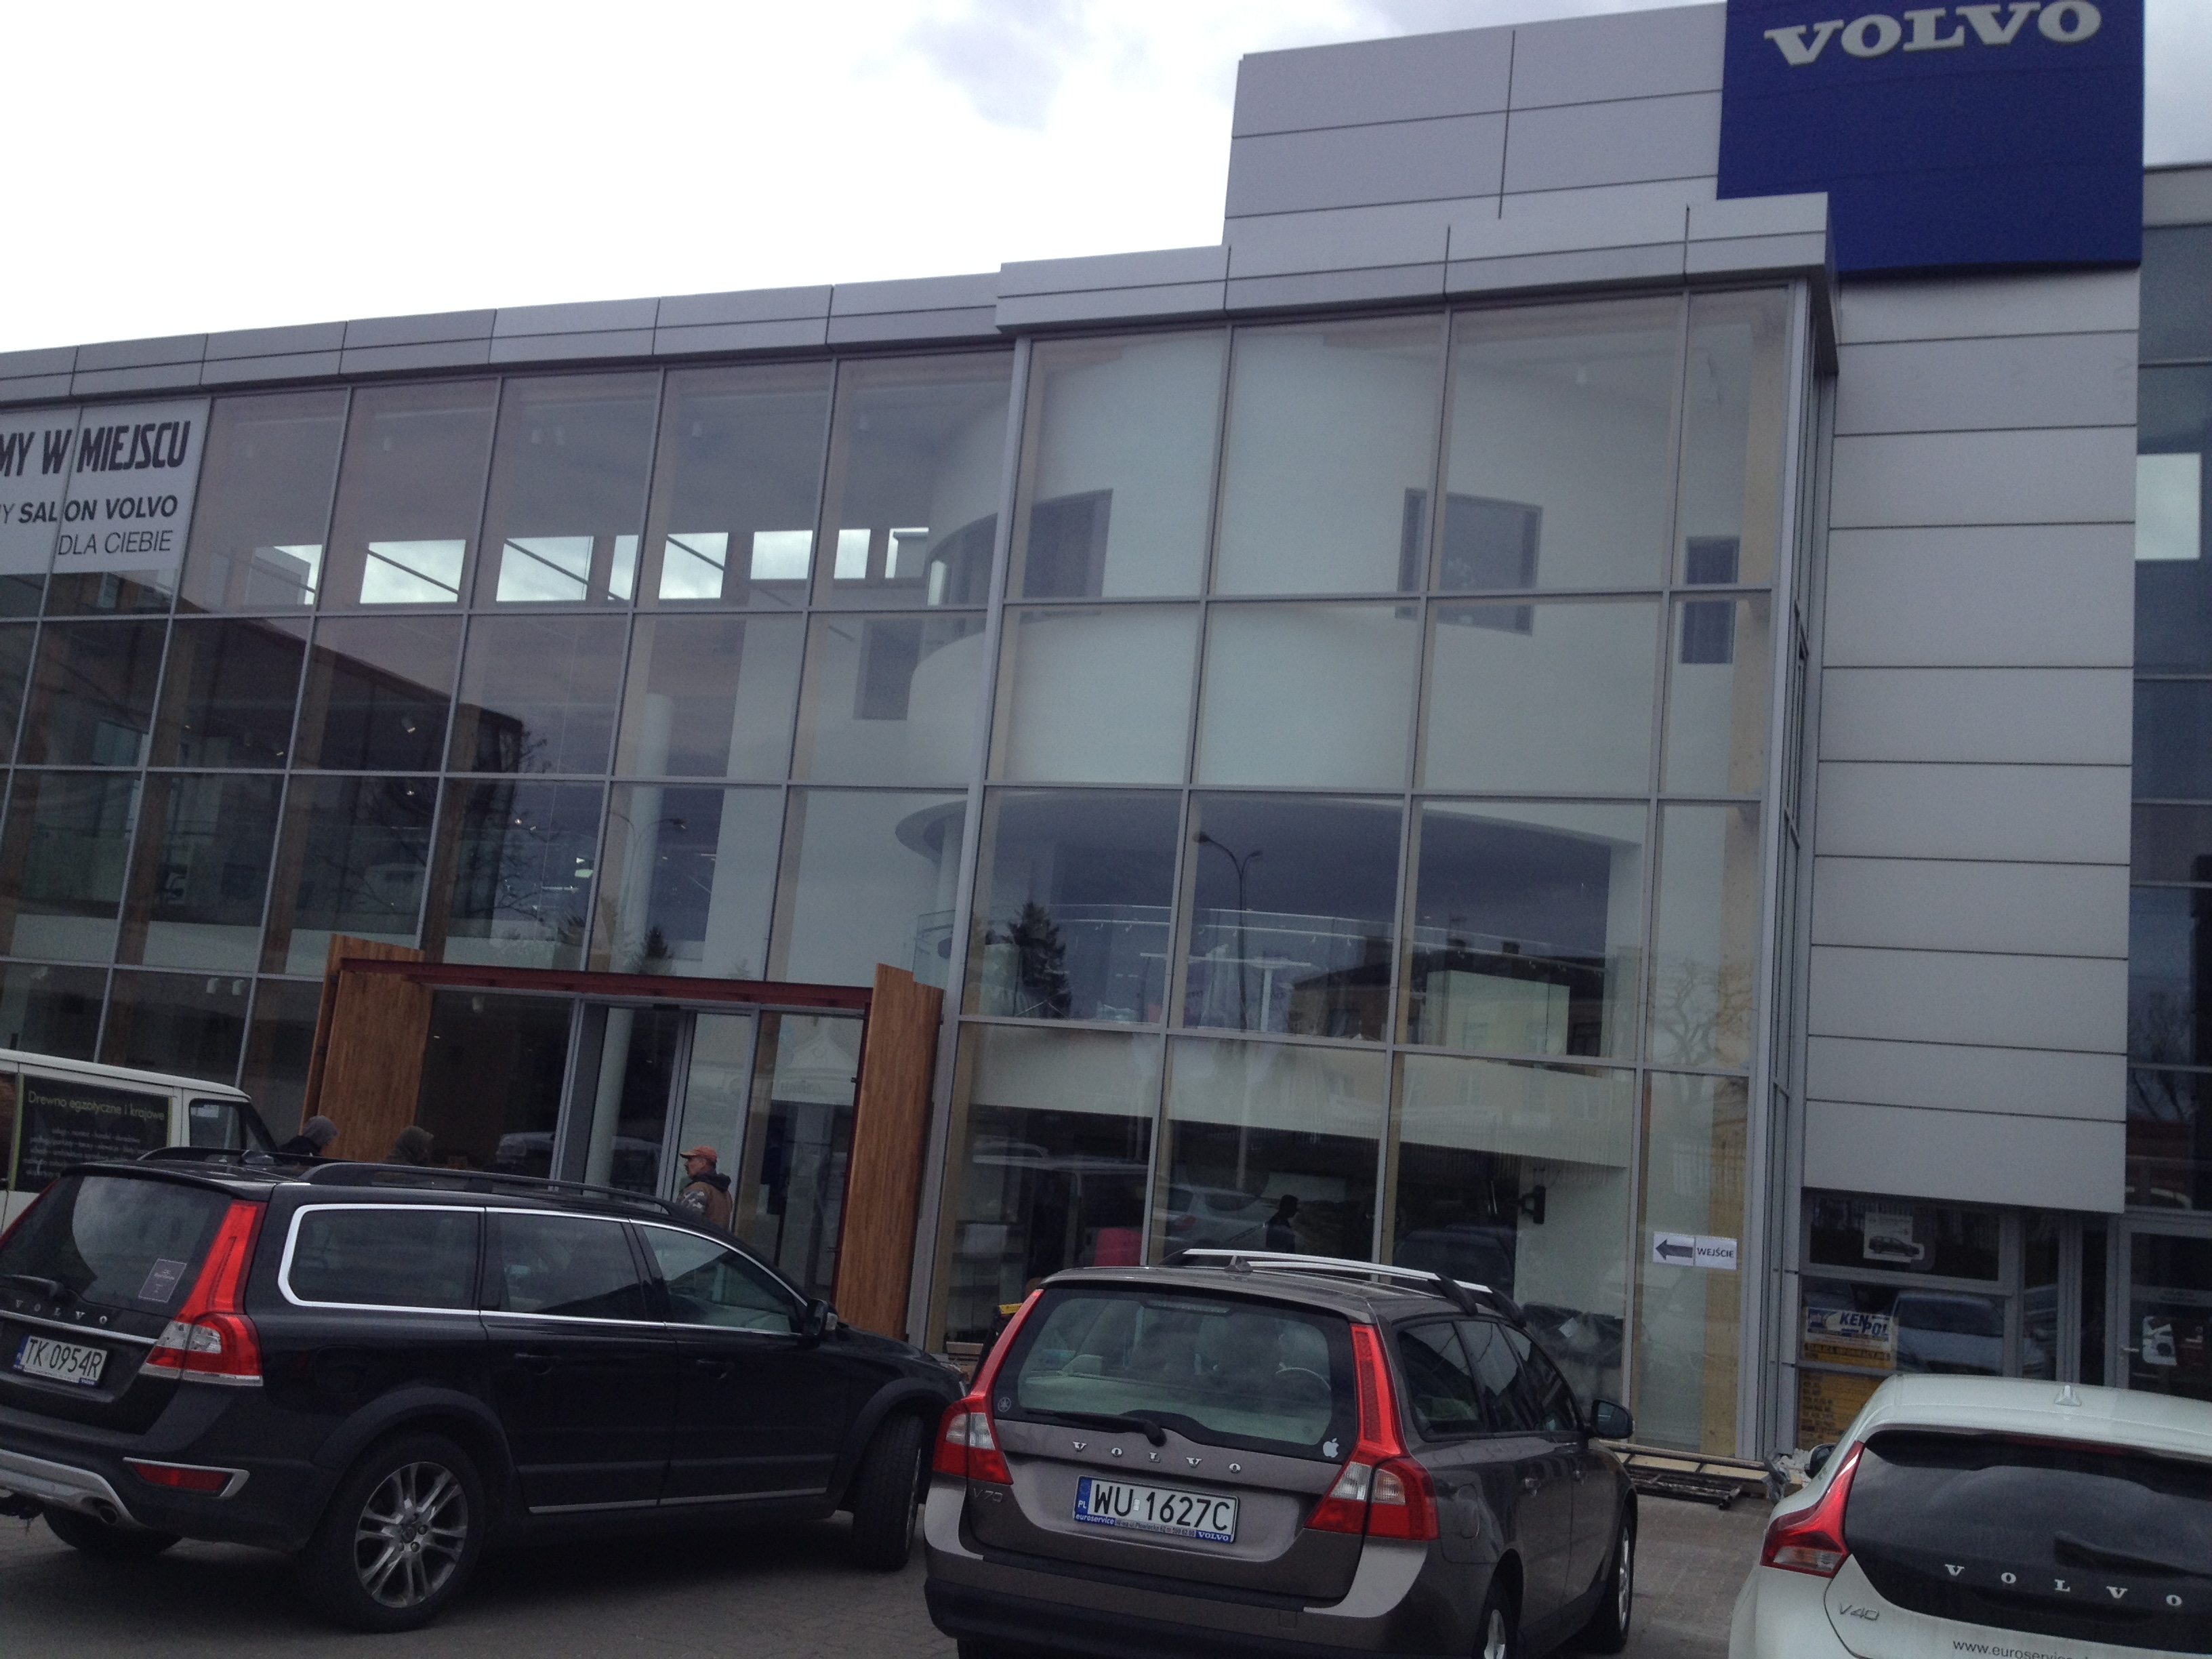 Salon samochodowy Volvo przy ul. Płowiecka 62 w Warszawie